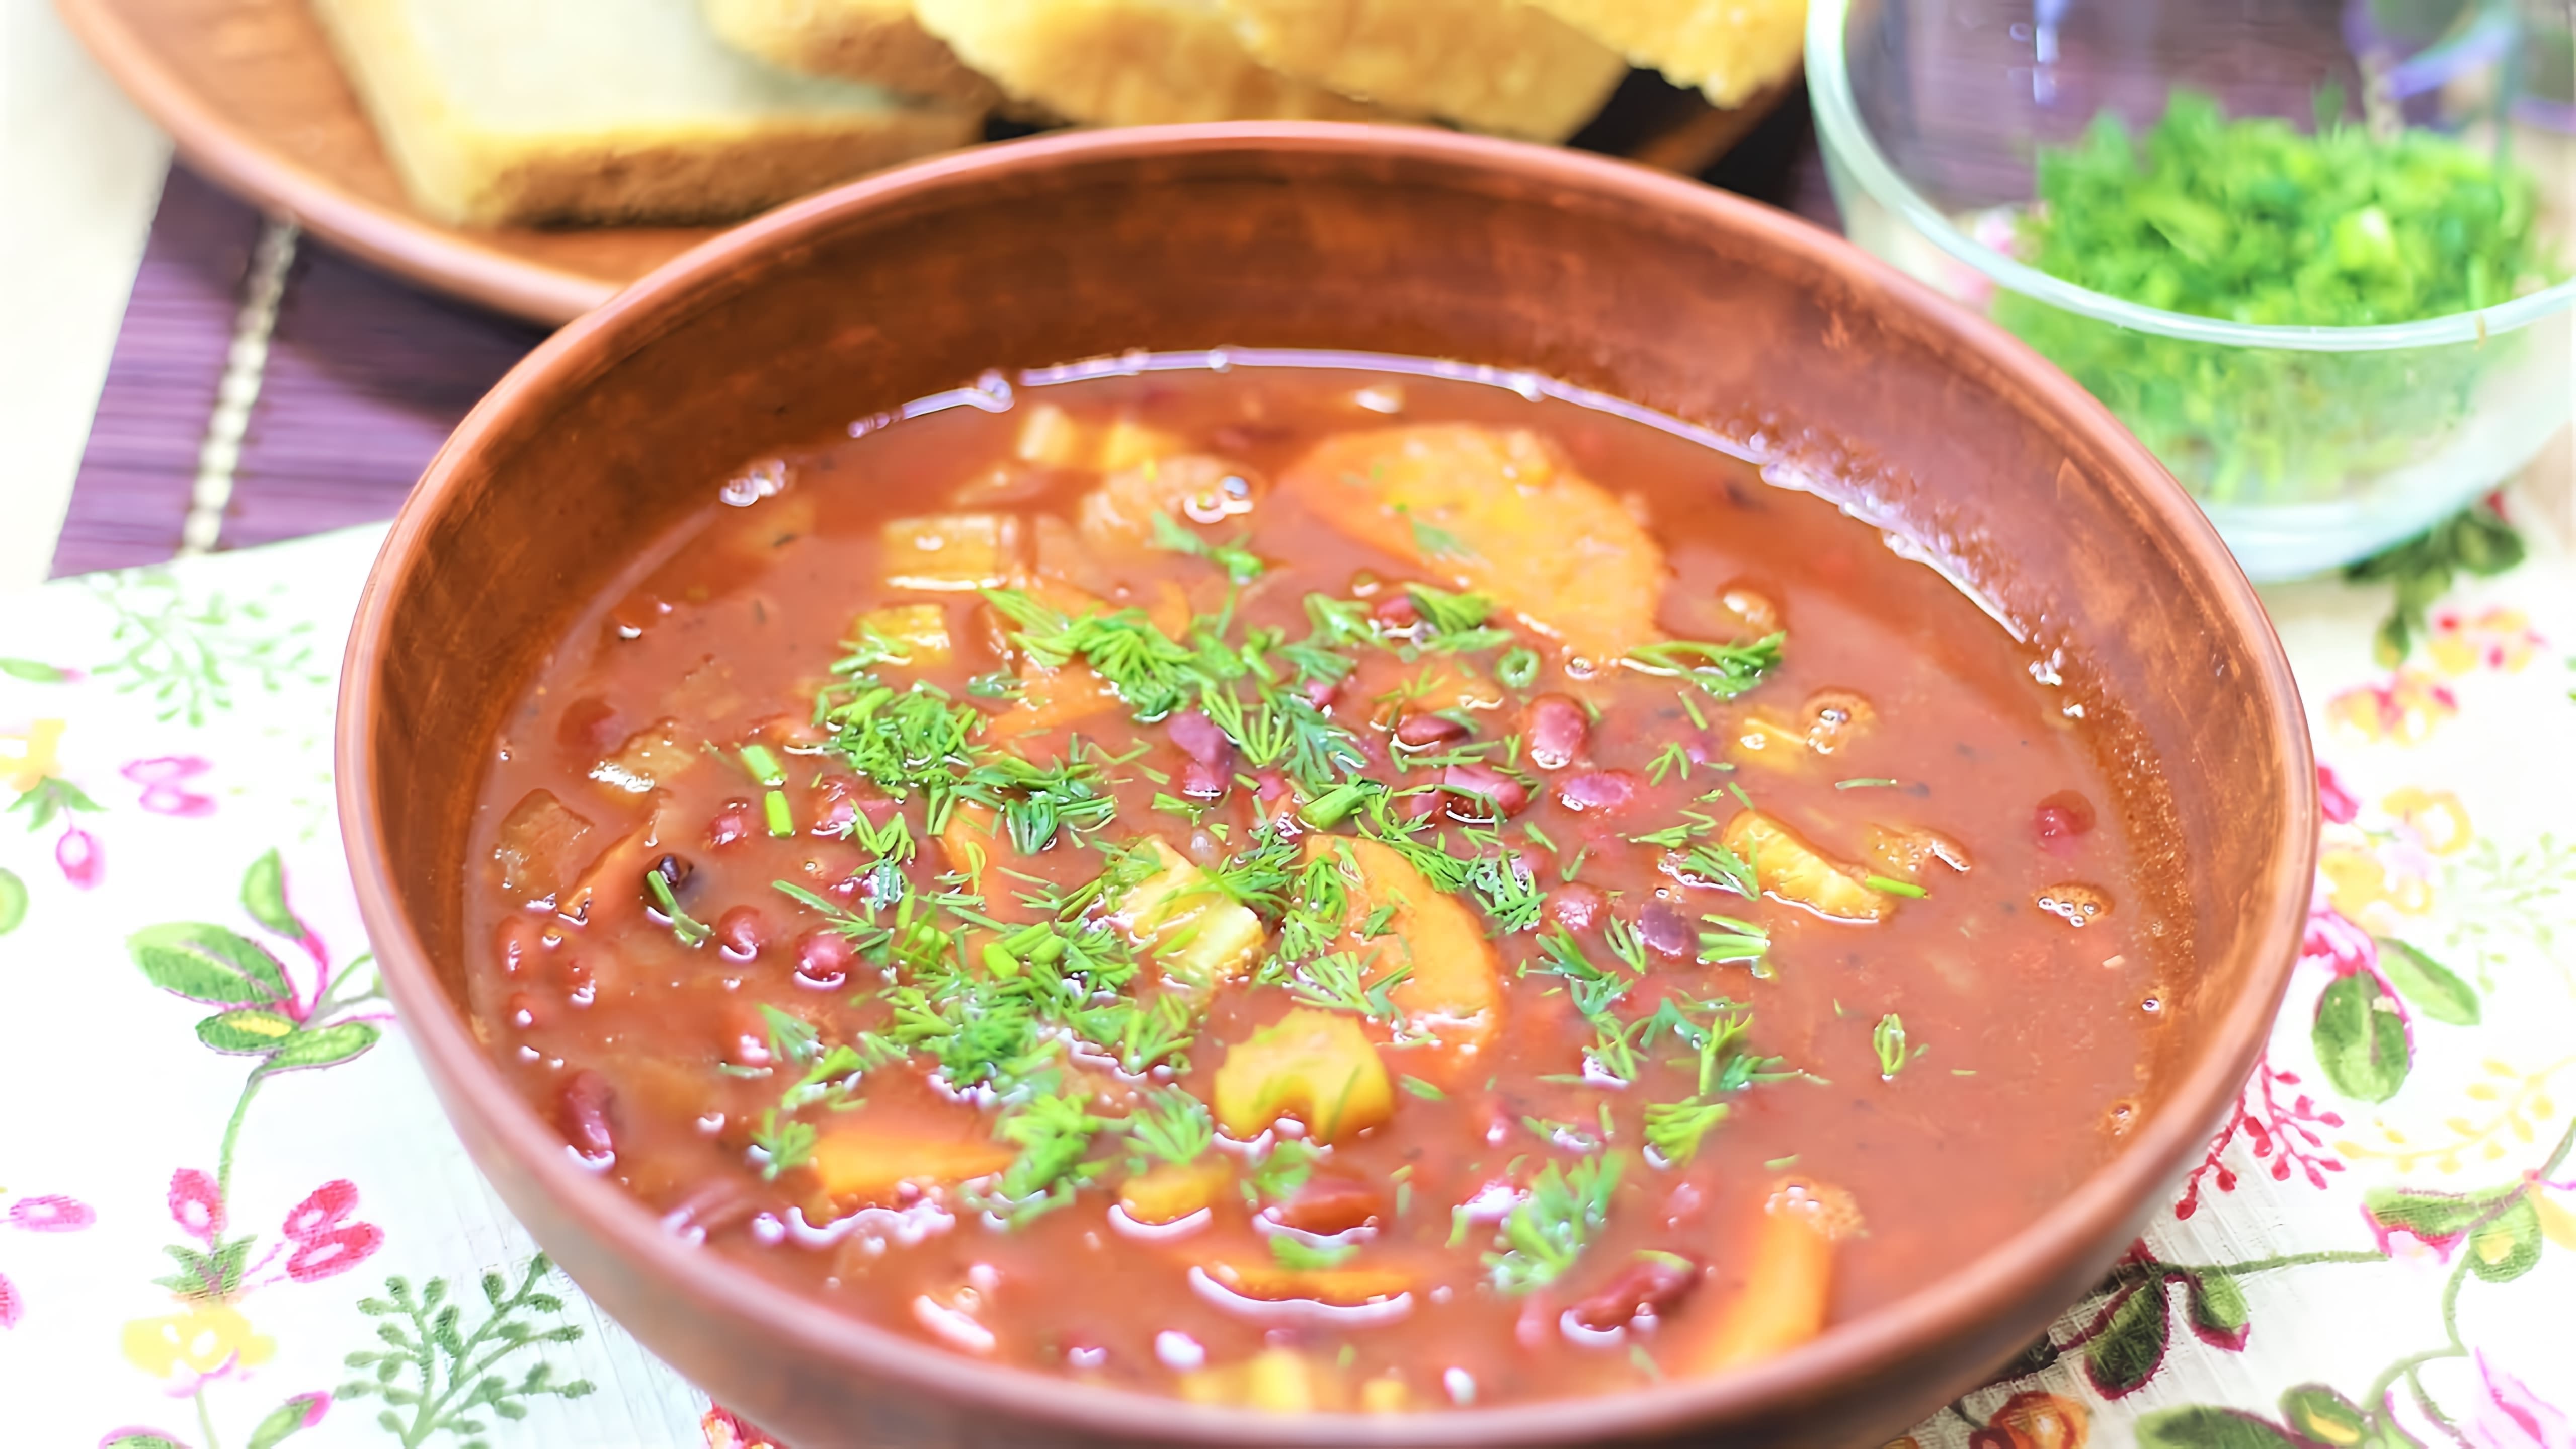 В этом видео демонстрируется рецепт постного супа с фасолью, который готовится из греческой национальной кухни